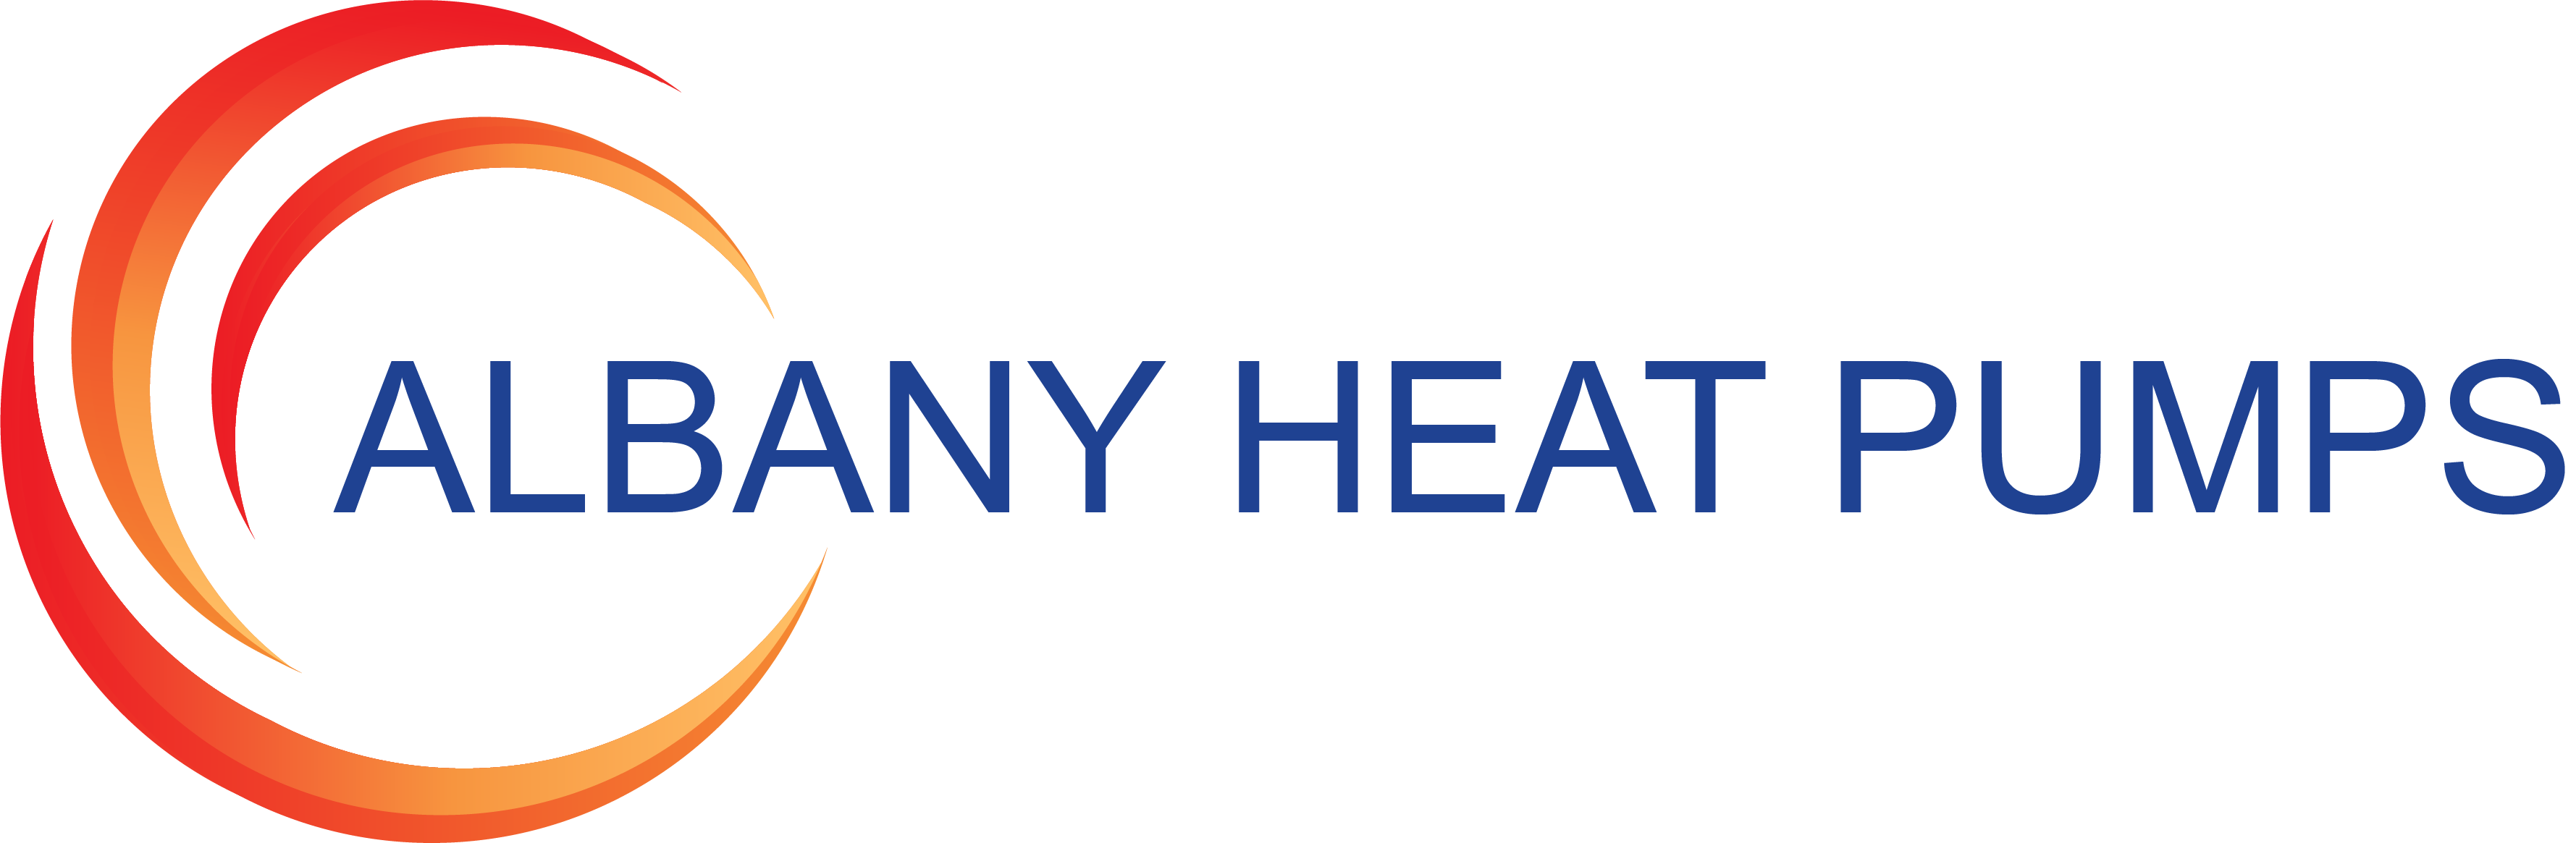 Albany Heat Pumps